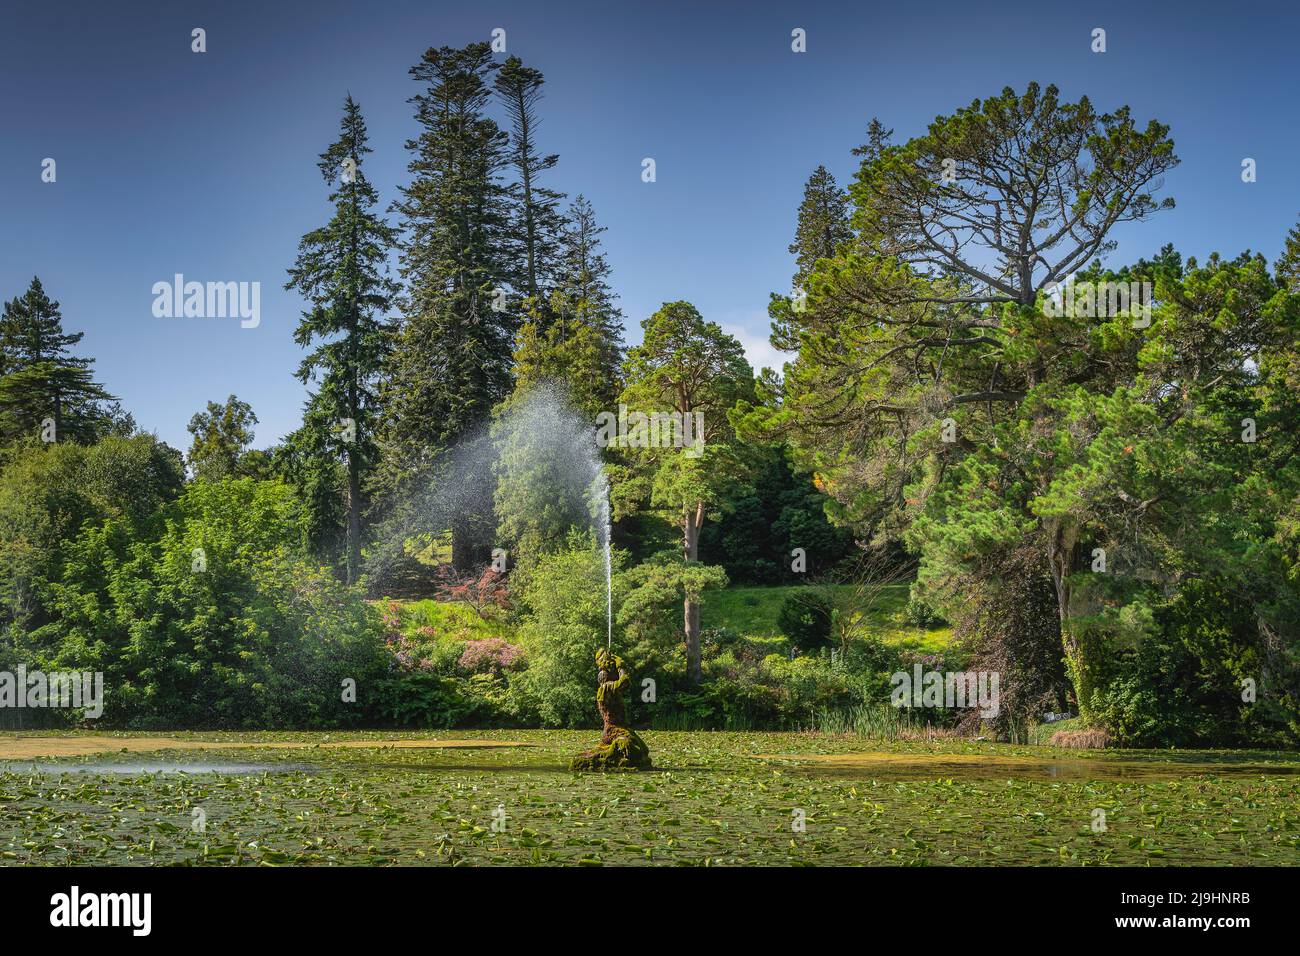 Acqua gushing fuori dalla fontana coperta di muschio, situato nel laghetto coperto di gigli d'acqua, Powerscourt giardini, Enniskerry, Wicklow, Irlanda Foto Stock